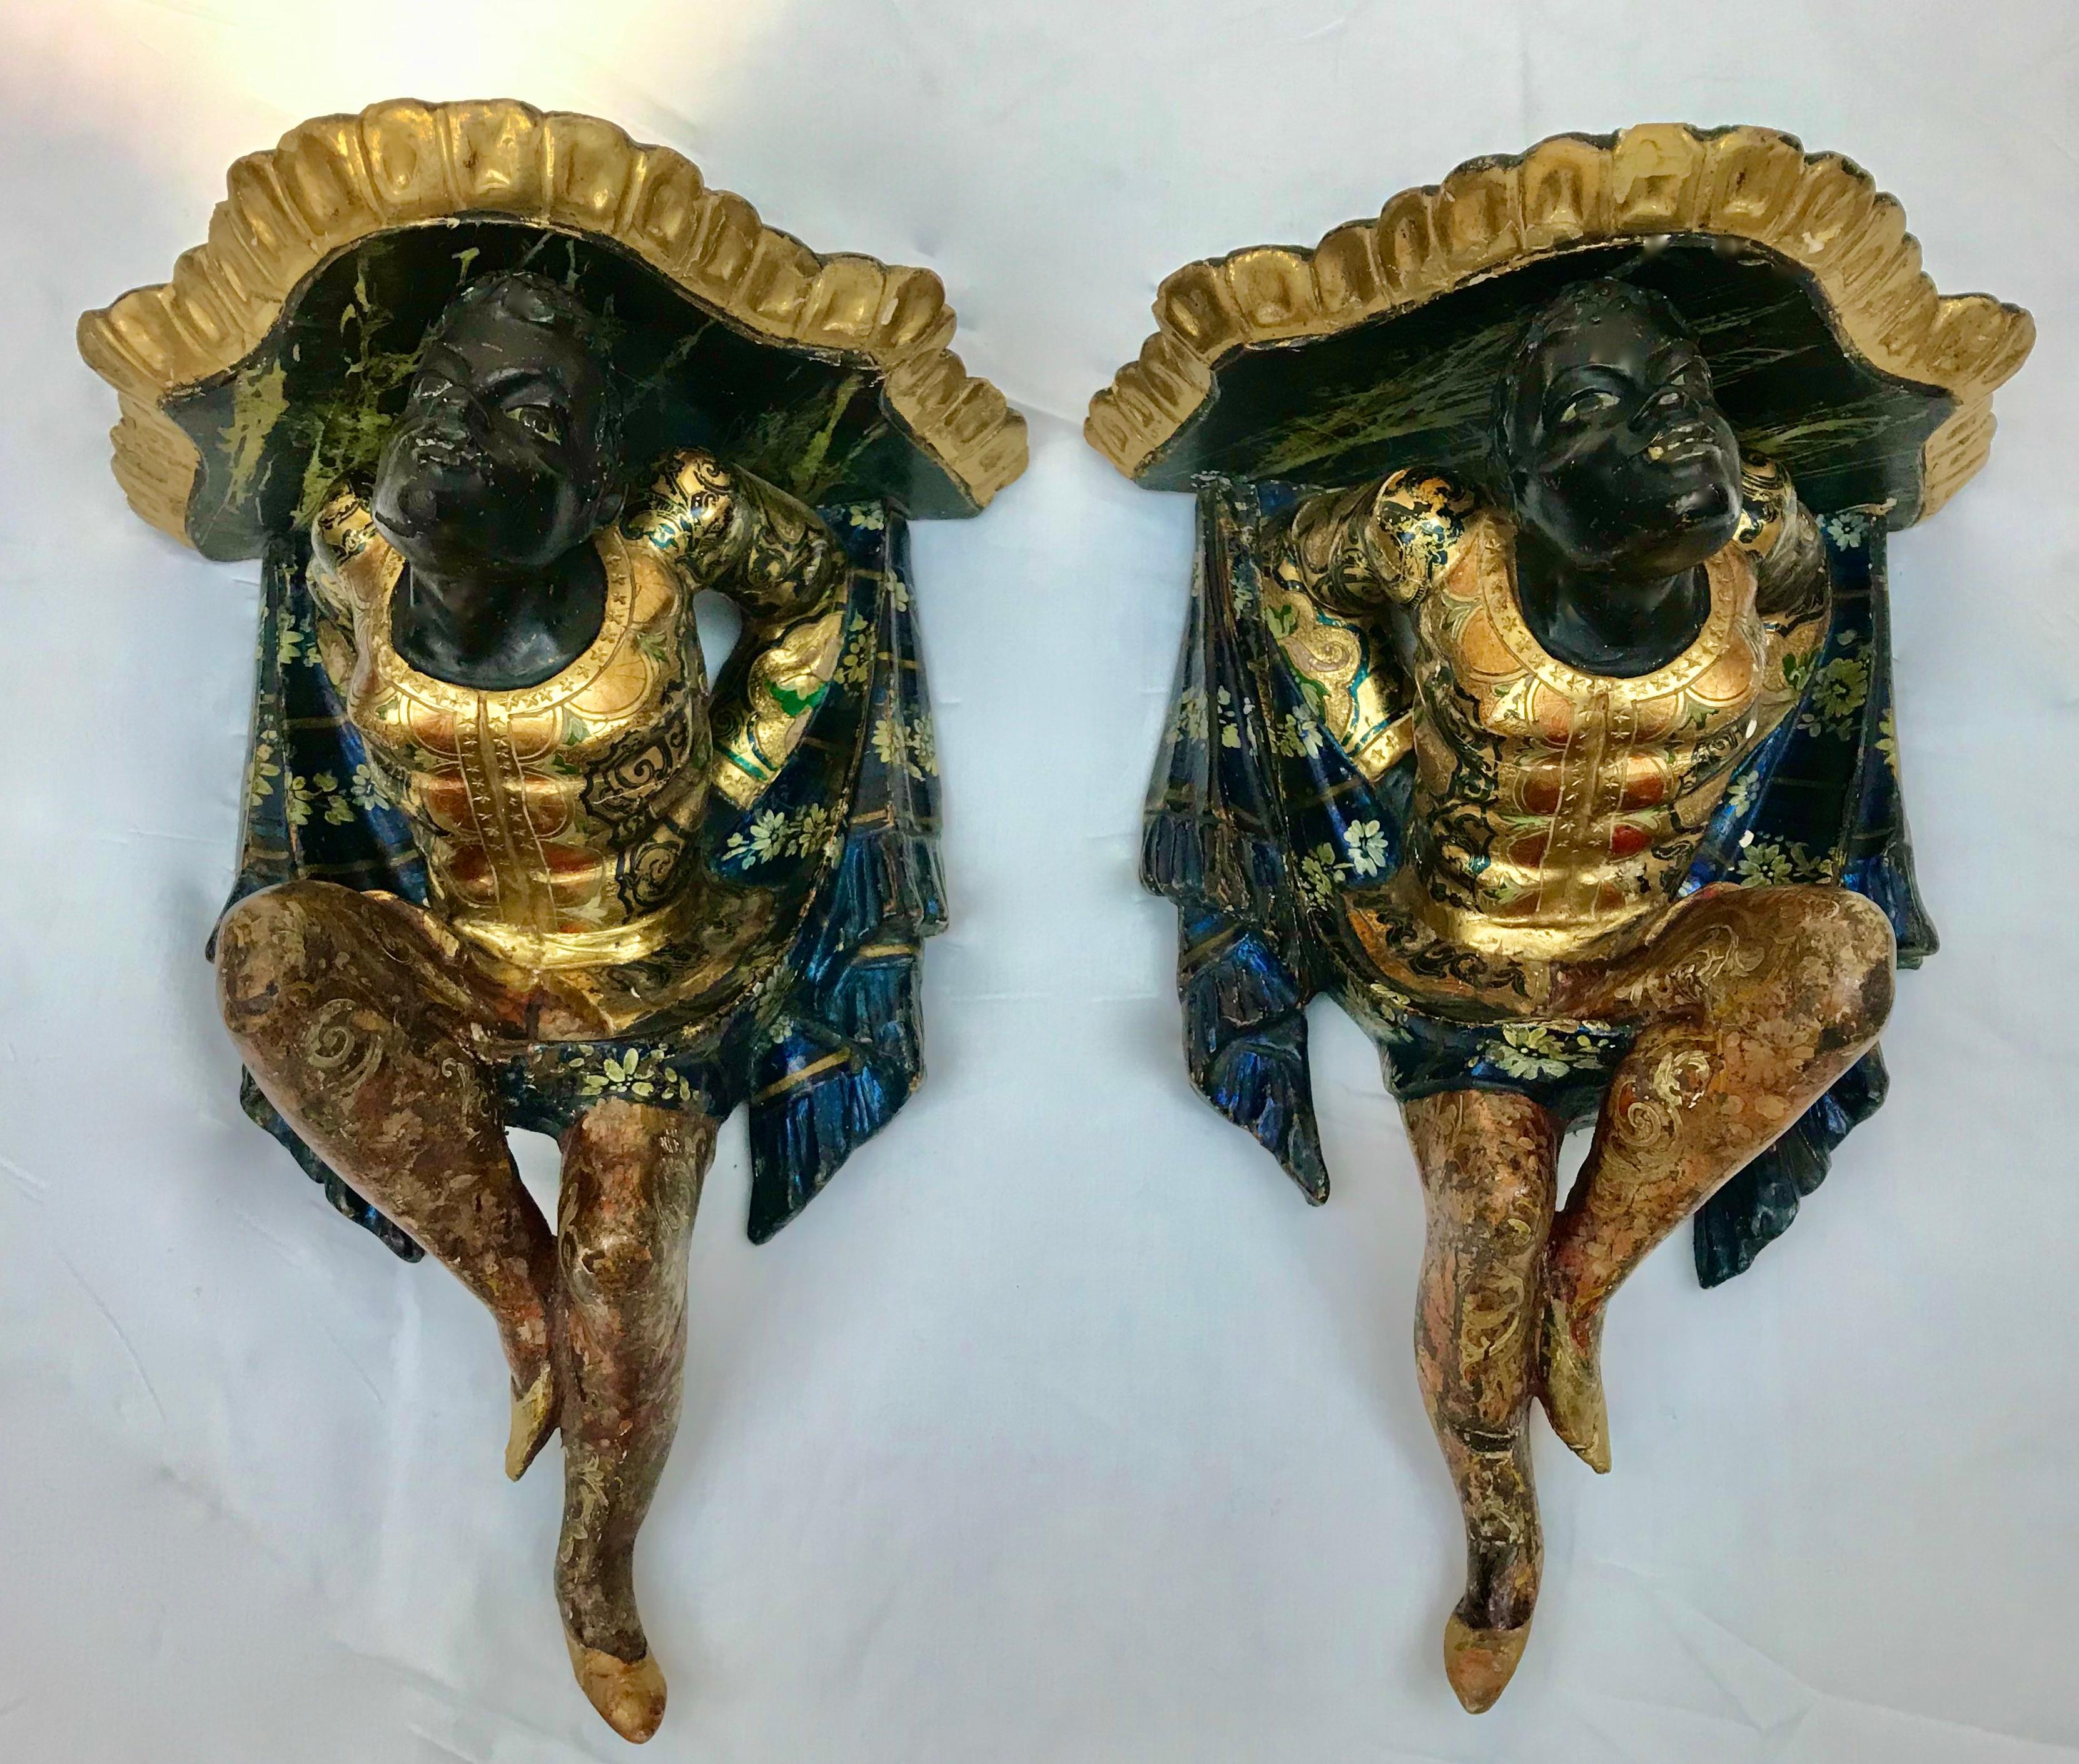 Diese phantasievolle  Ein Paar handgeschnitzter, vergoldeter und polychromer figuraler Wandkonsolen wurde im 19. Jahrhundert in Venedig, Italien, hergestellt.
Sie zeigen fantasievoll gekleidete Figuren, die mit geschnitzten Draperien und Quasten